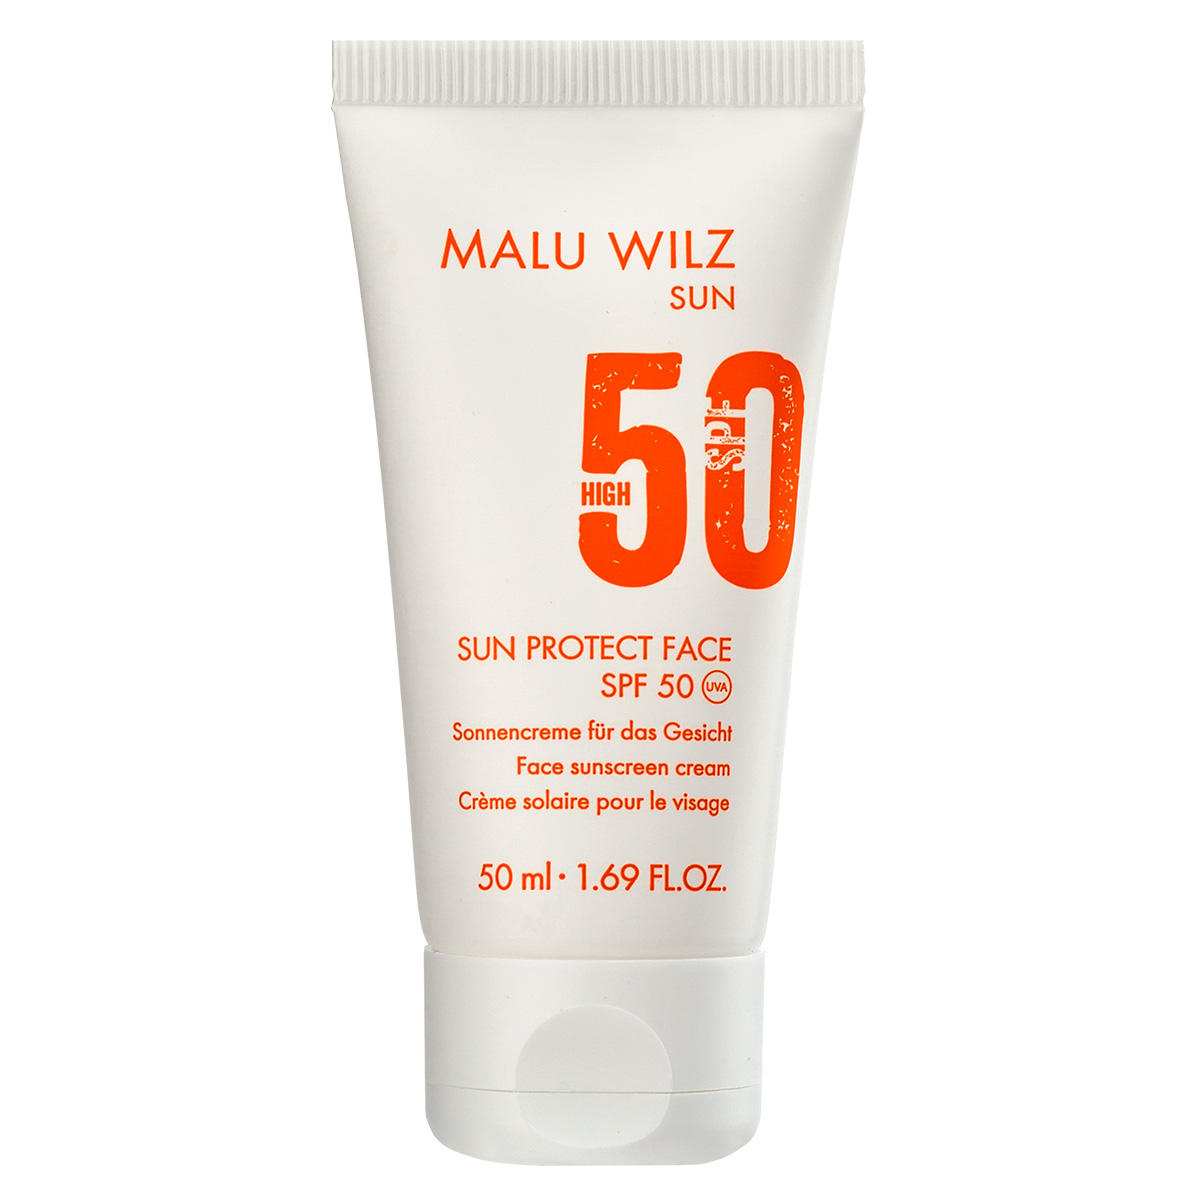 Malu Wilz Sun Crème solaire pour le visage SPF 50 50 ml - 1